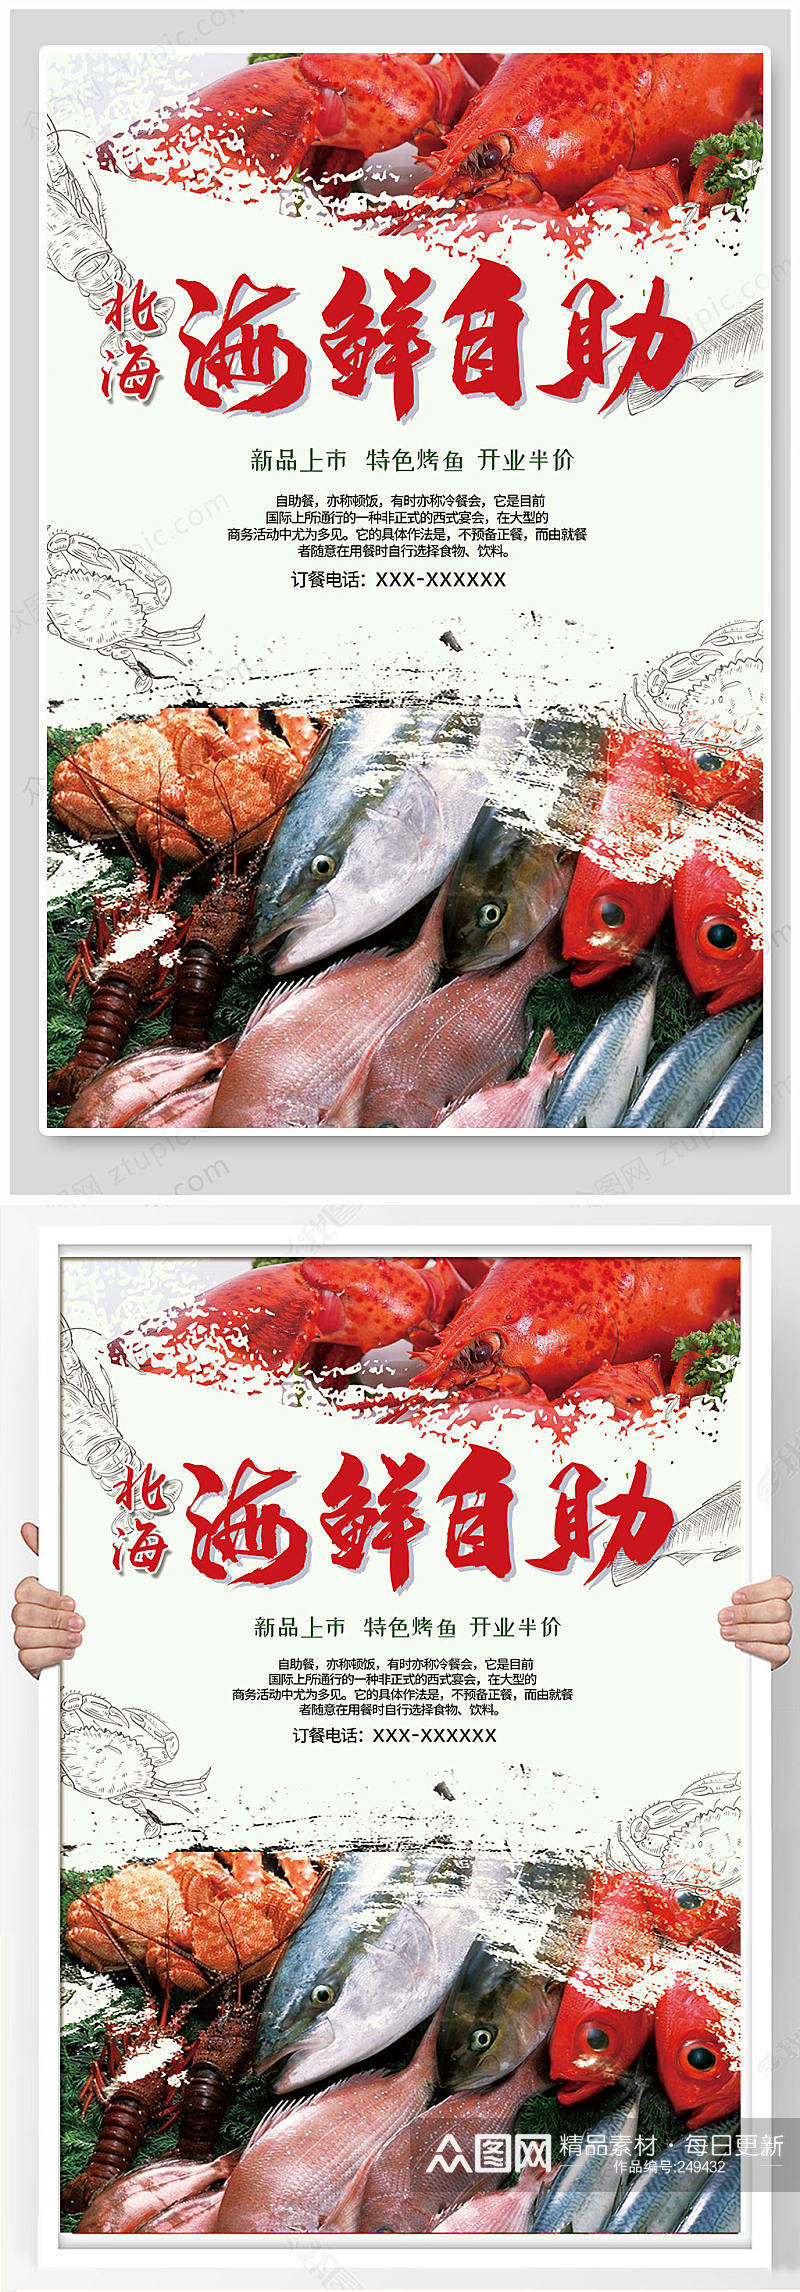 中国风海鲜自助海报设计素材